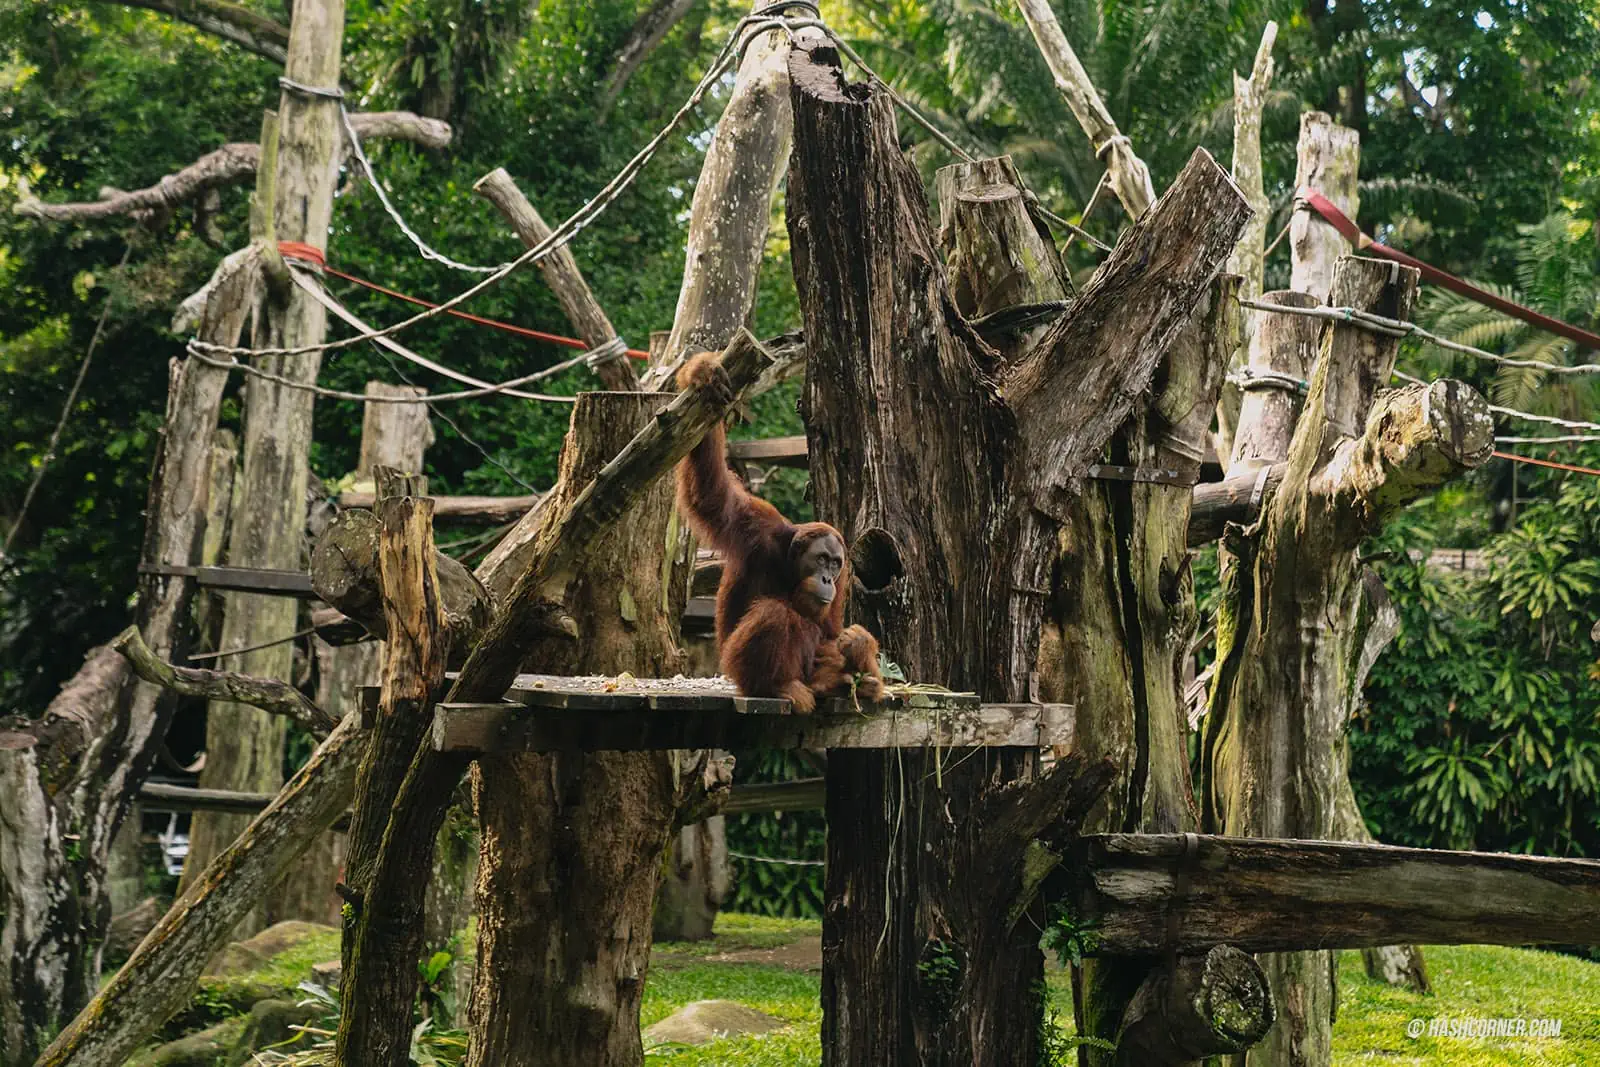 รีวิว Singapore Zoo x สิงคโปร์ เที่ยวส่องสวนสัตว์สิงคโปร์